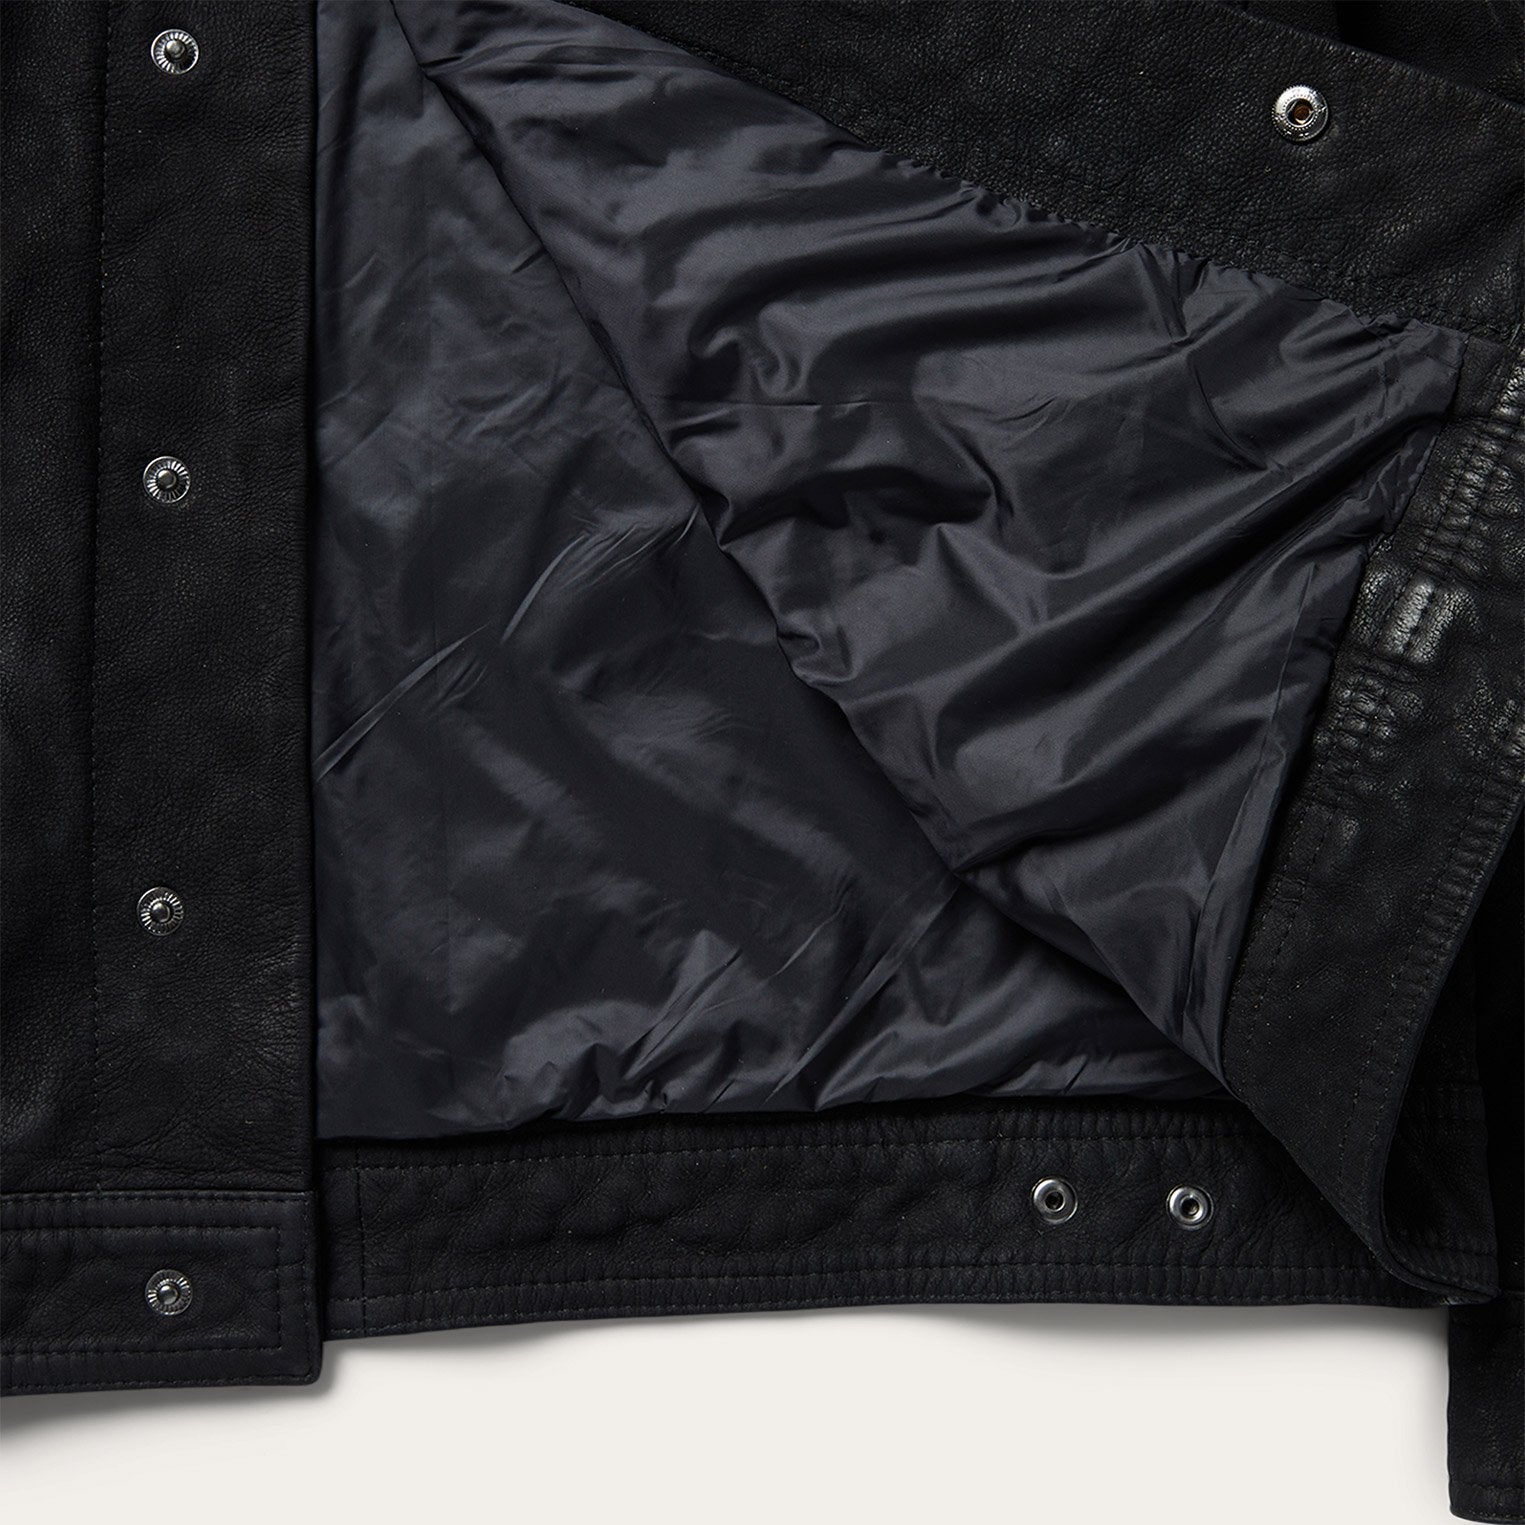 Stetson Leather Jean Jacket